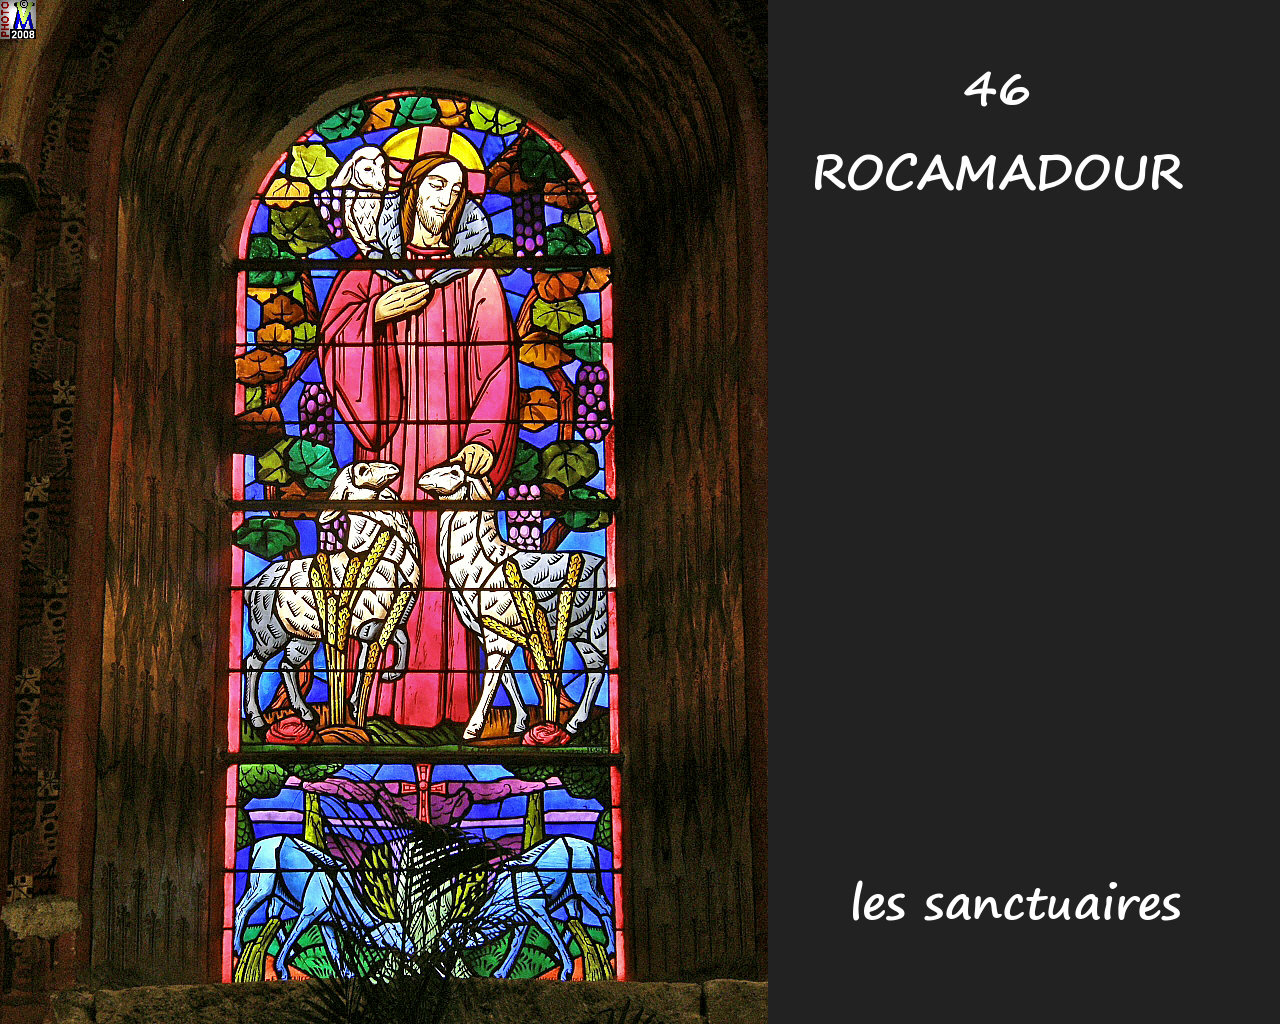 46ROCAMADOUR_sanctuaires_732.jpg